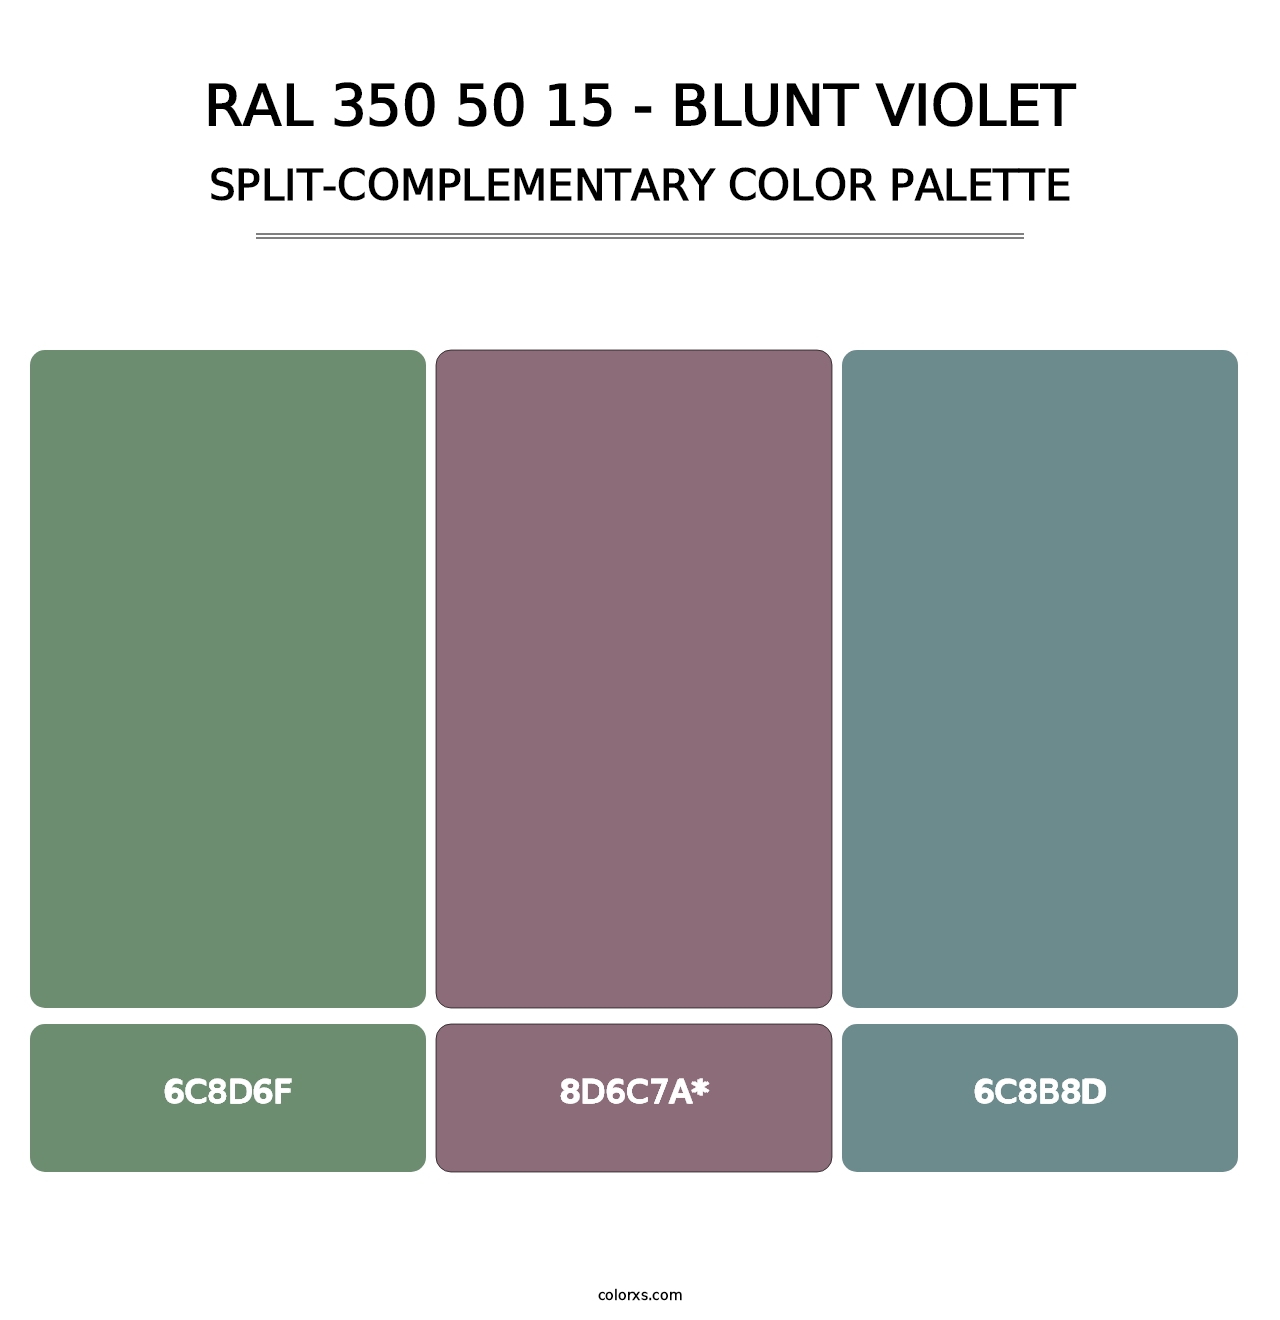 RAL 350 50 15 - Blunt Violet - Split-Complementary Color Palette